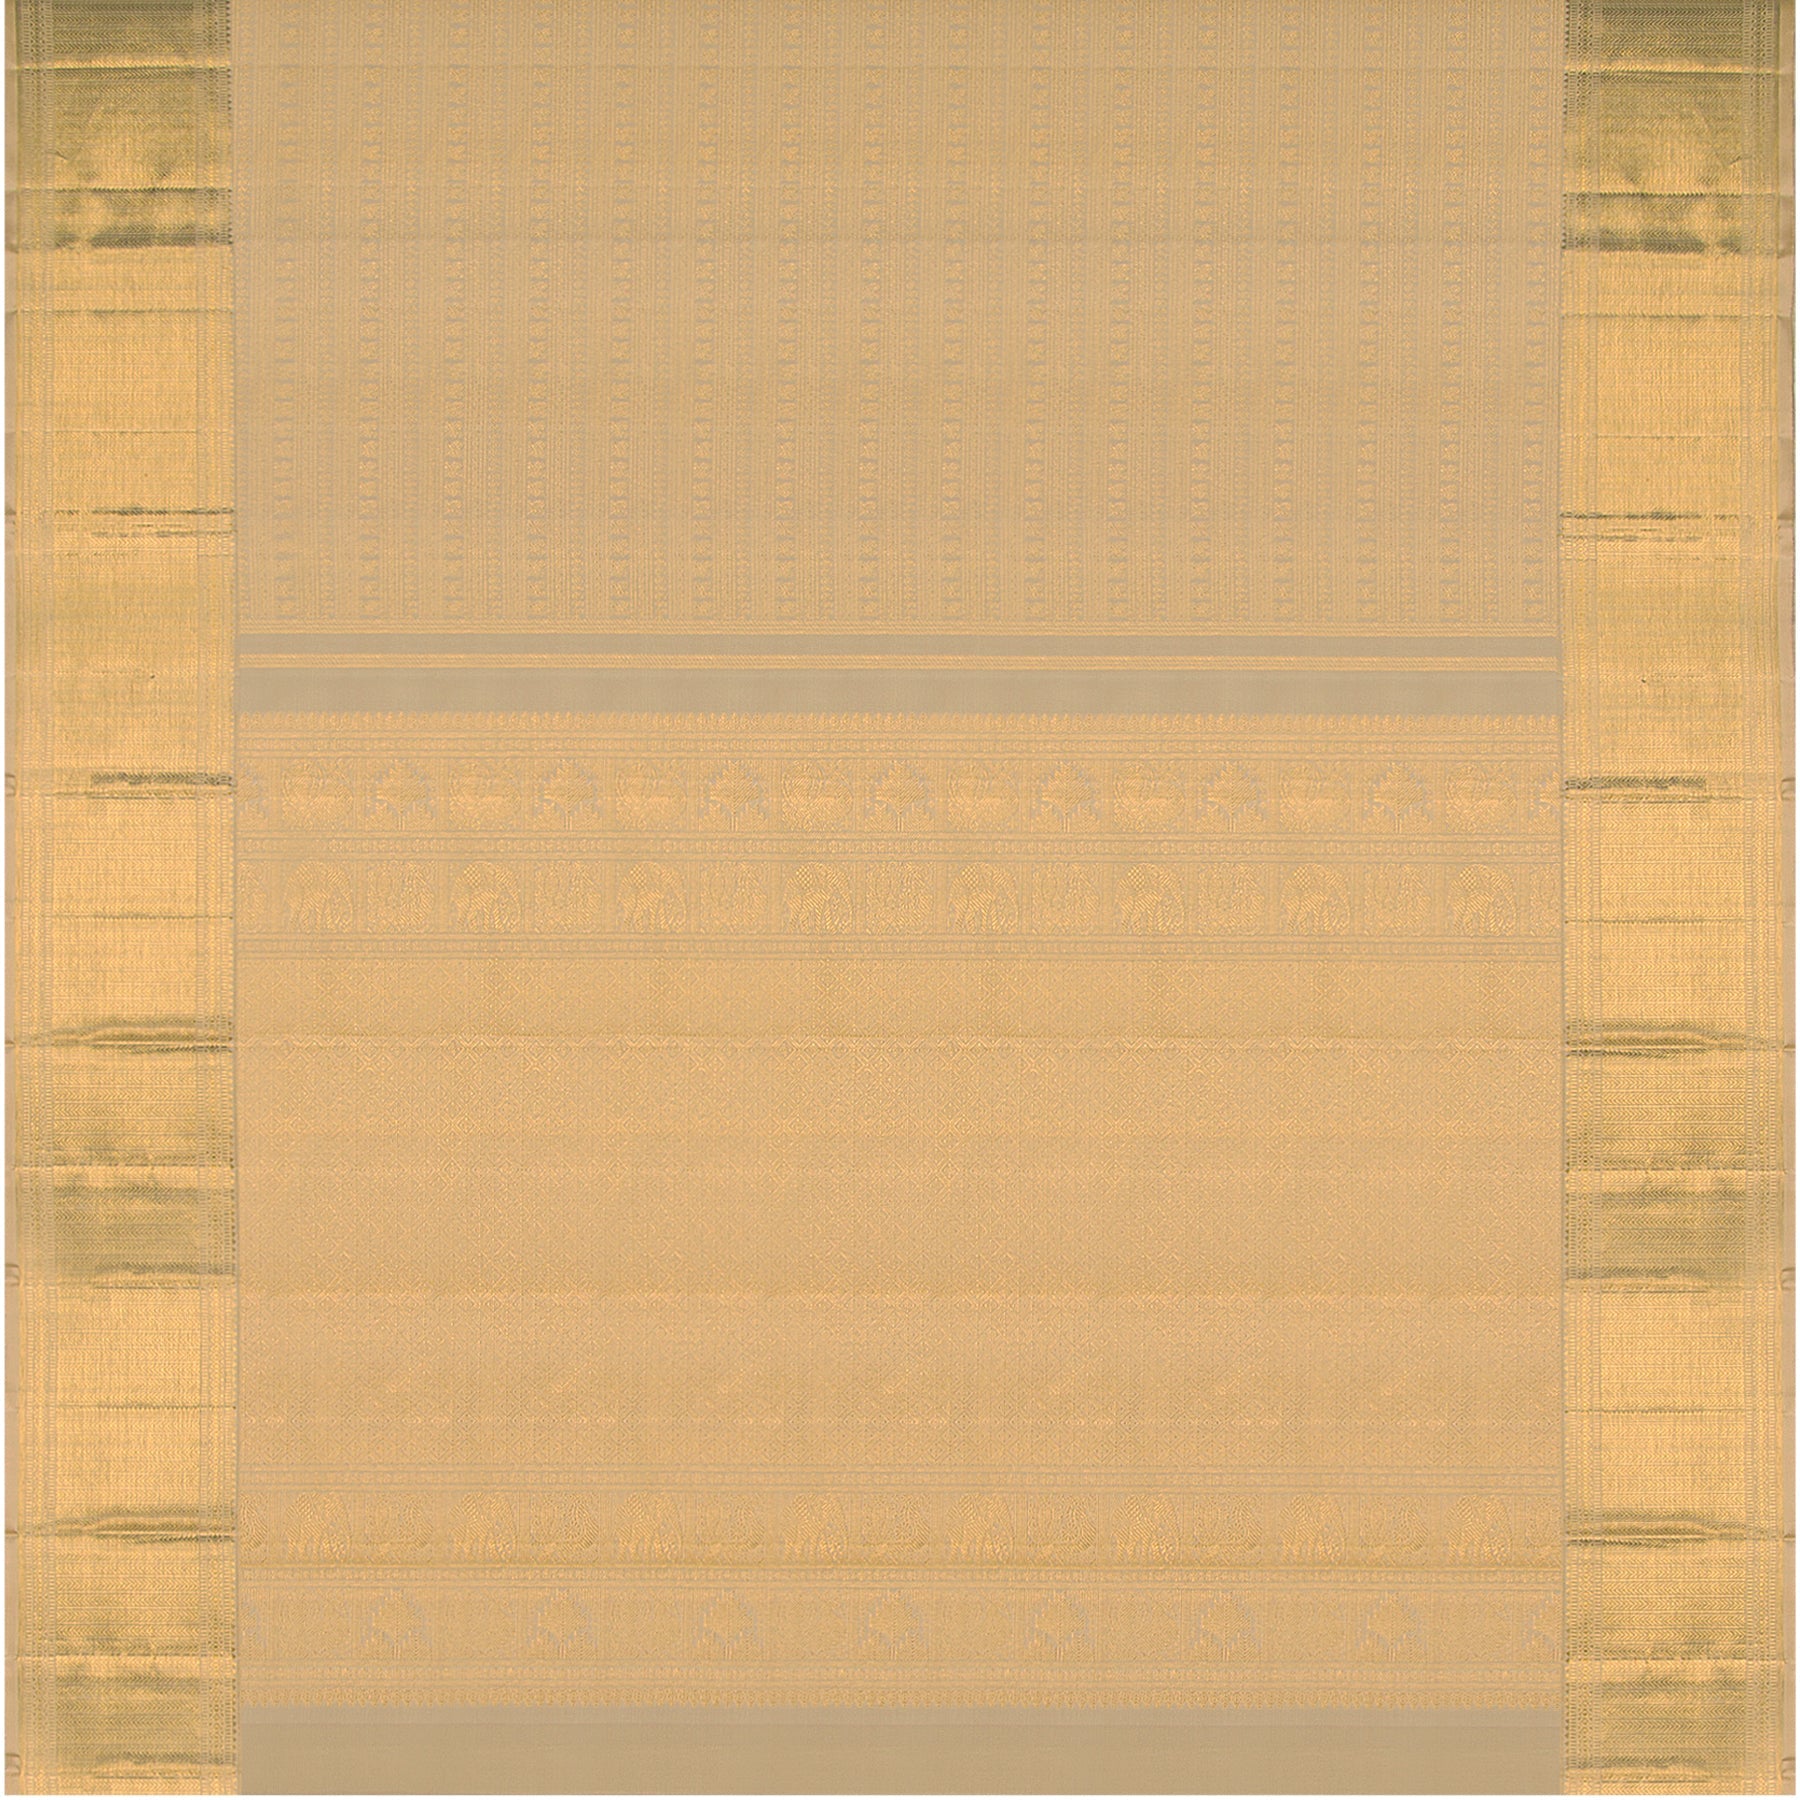 Kanakavalli Kanjivaram Silk Sari 23-110-HS001-09204 - Full View